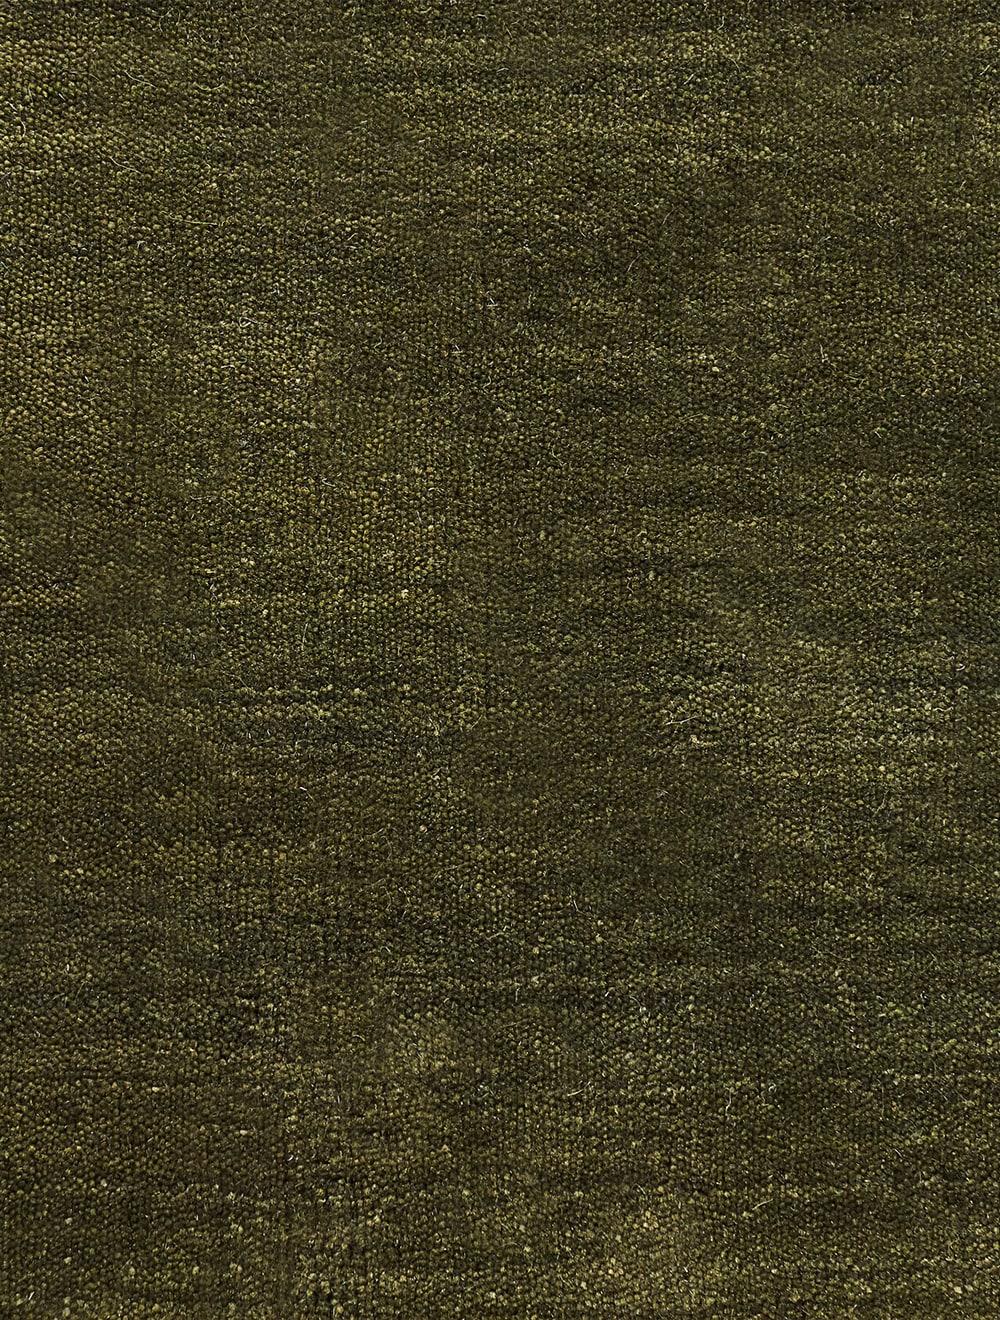 moss green carpet